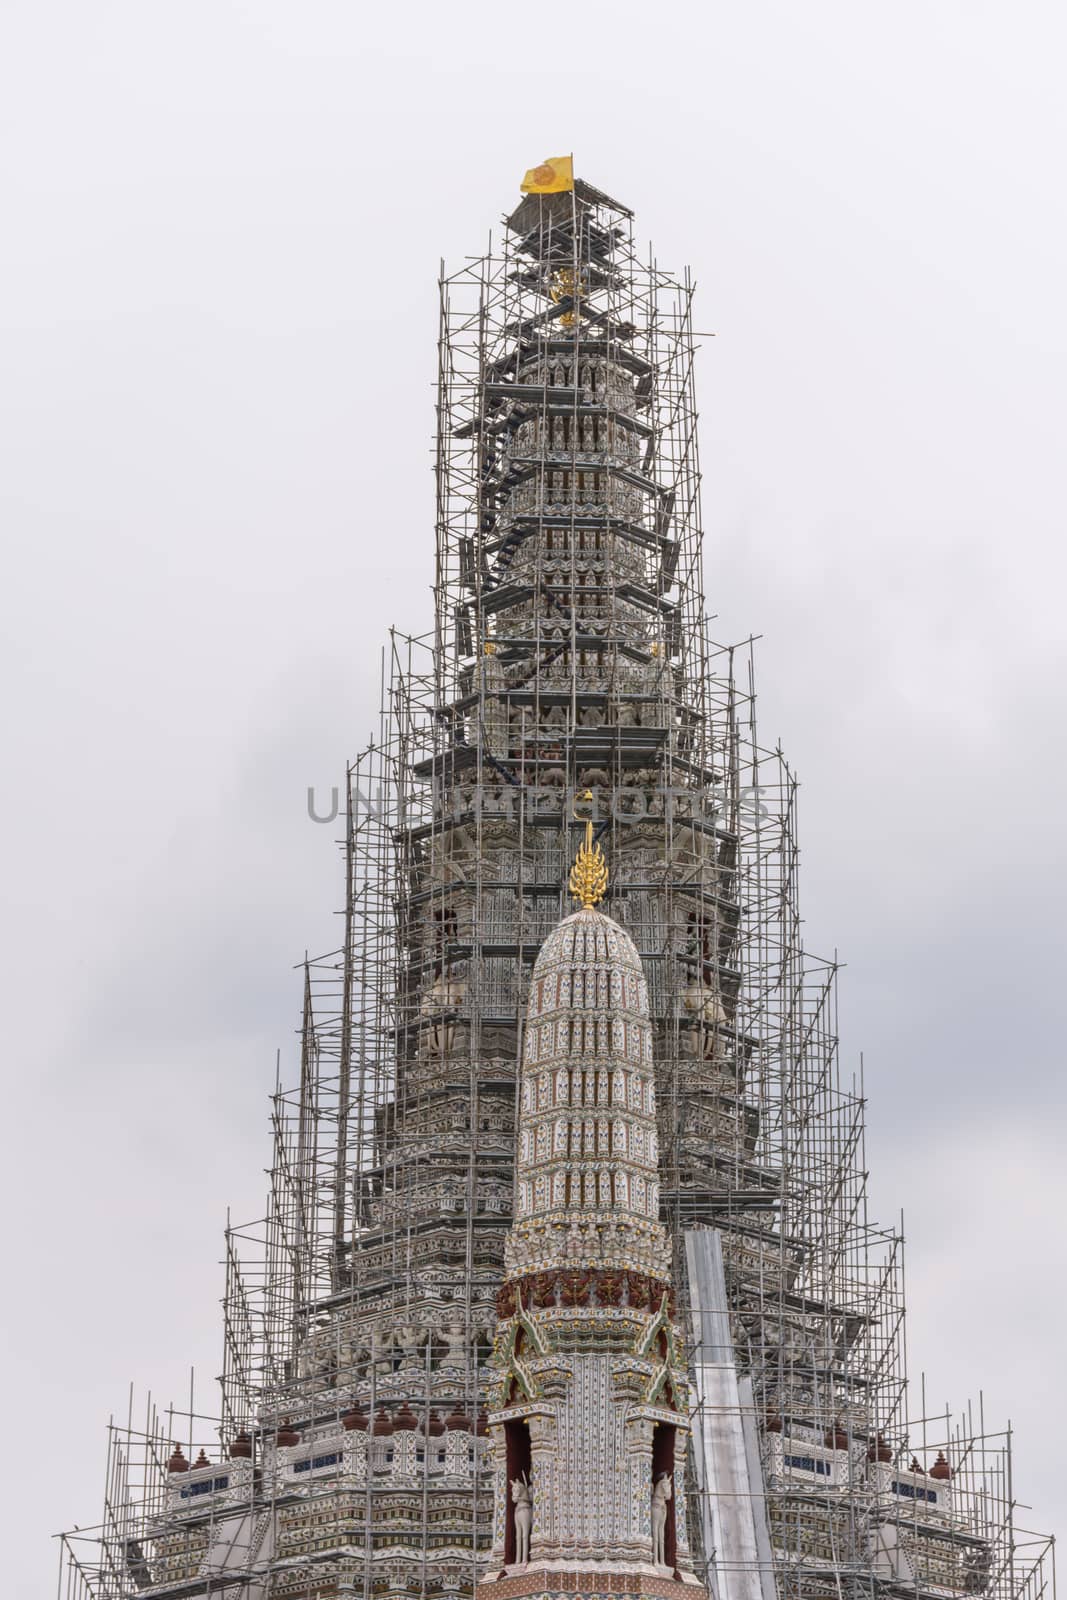 Thai pagoda repairing in temple (Wat Arun Ratchawararam) by PongMoji